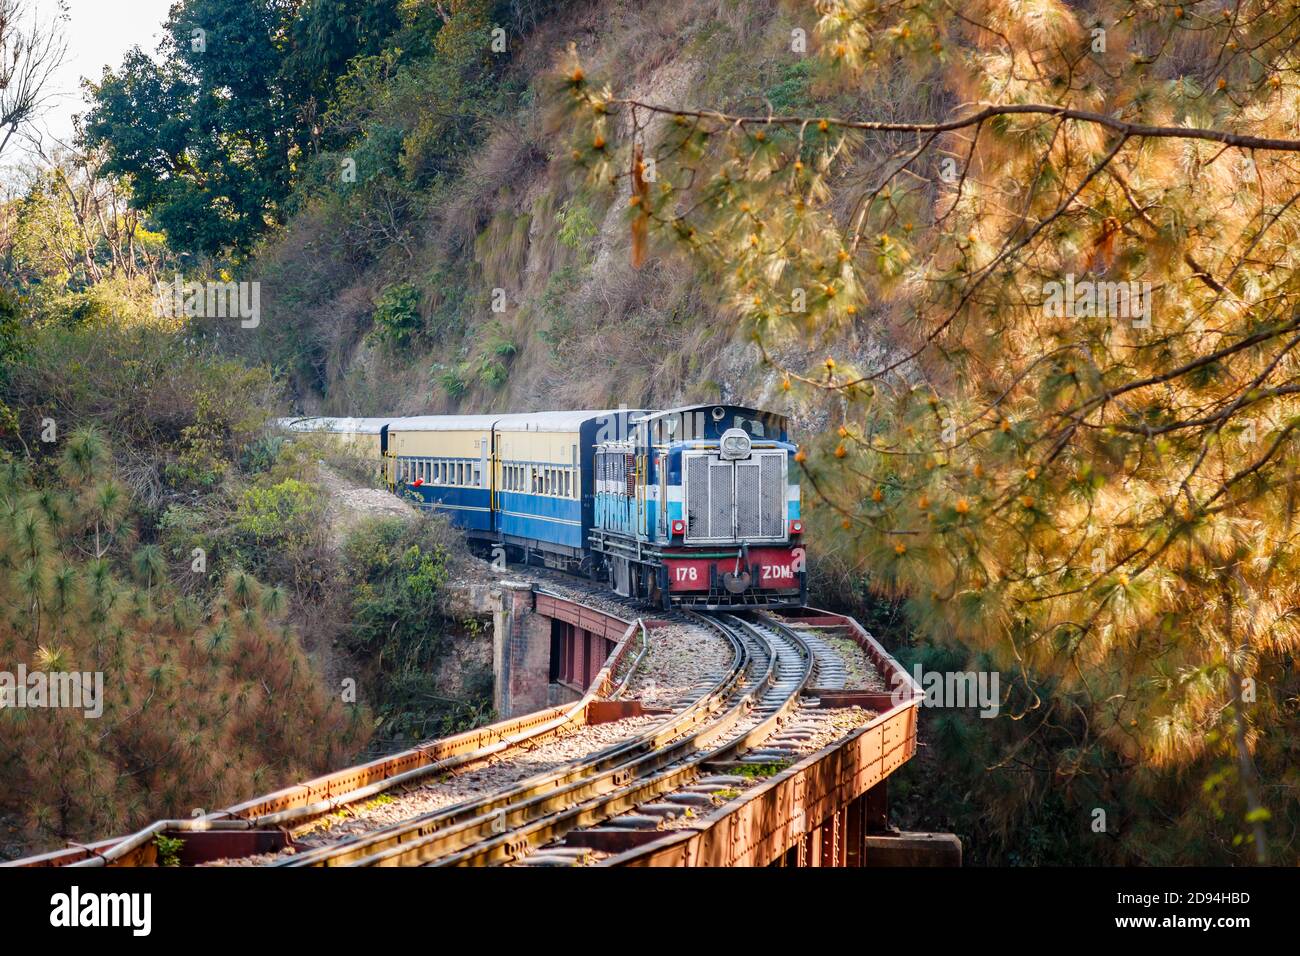 Un train diesel indien bleu qui s'approche sur des voies ferrées au-dessus d'un pont à travers une gorge dans l'Himachal Pradesh, dans le nord de l'Inde Banque D'Images